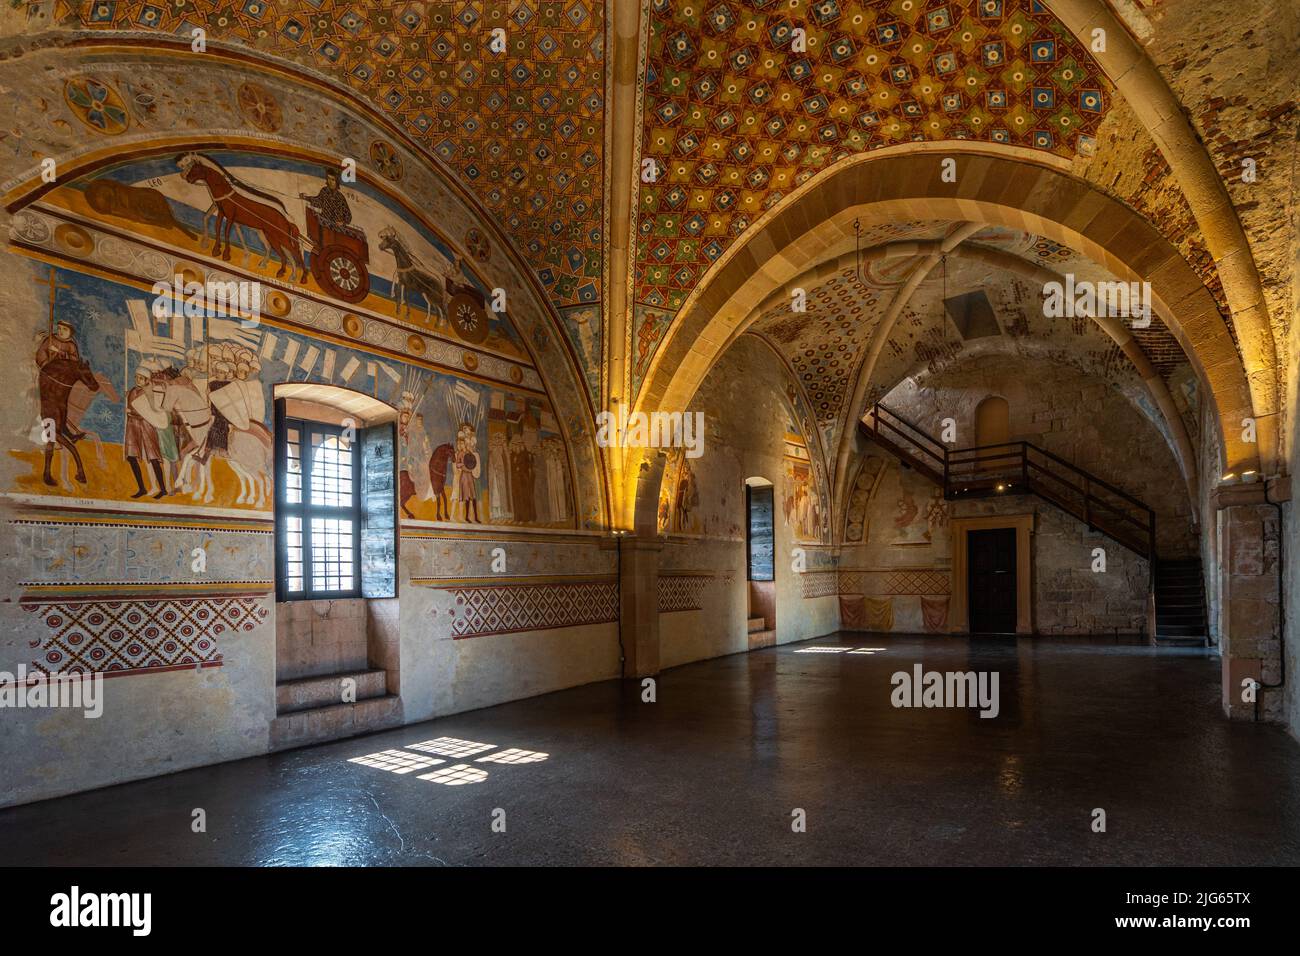 Sala della Giustizia (salle de justice) à Rocca di Angera, avec d'anciennes fresques médiévales couvrant toute la salle. Angera, Lombardie, Italie, avril 2022 Banque D'Images